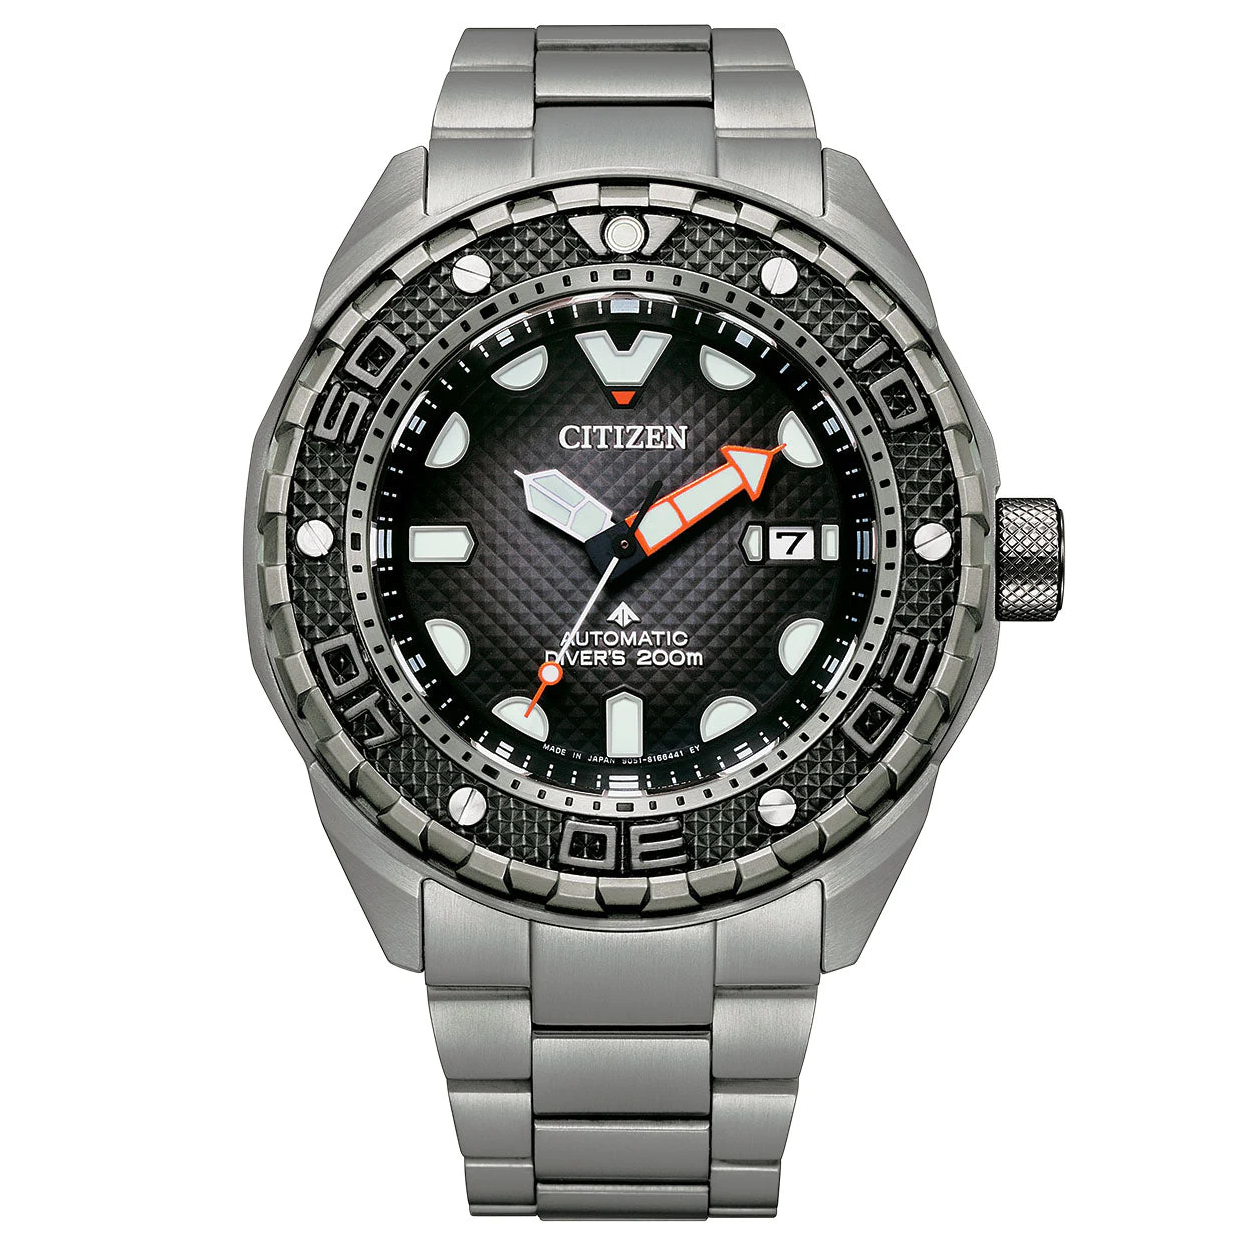 Citizen Men's Watch Promaster Diver Automatic Super Titanium Bracelet NB6004-83E